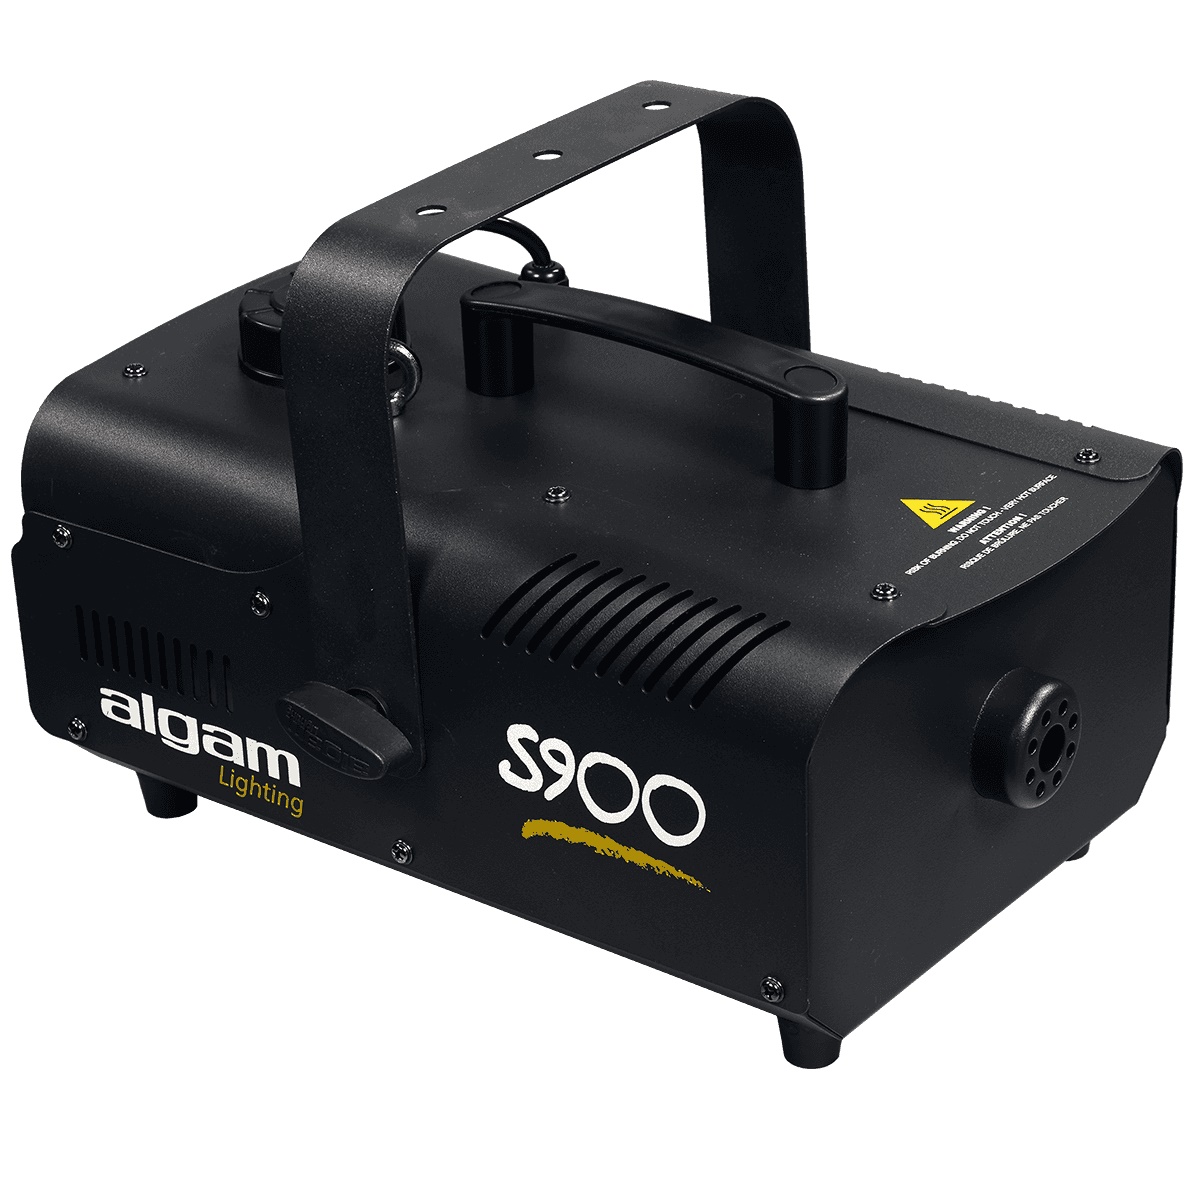 ALGAM LIGHTING S900 MACCHINA DEL FUMO 900W CON TELECOMANDO CABLATO E RADIOCOMANDO 1